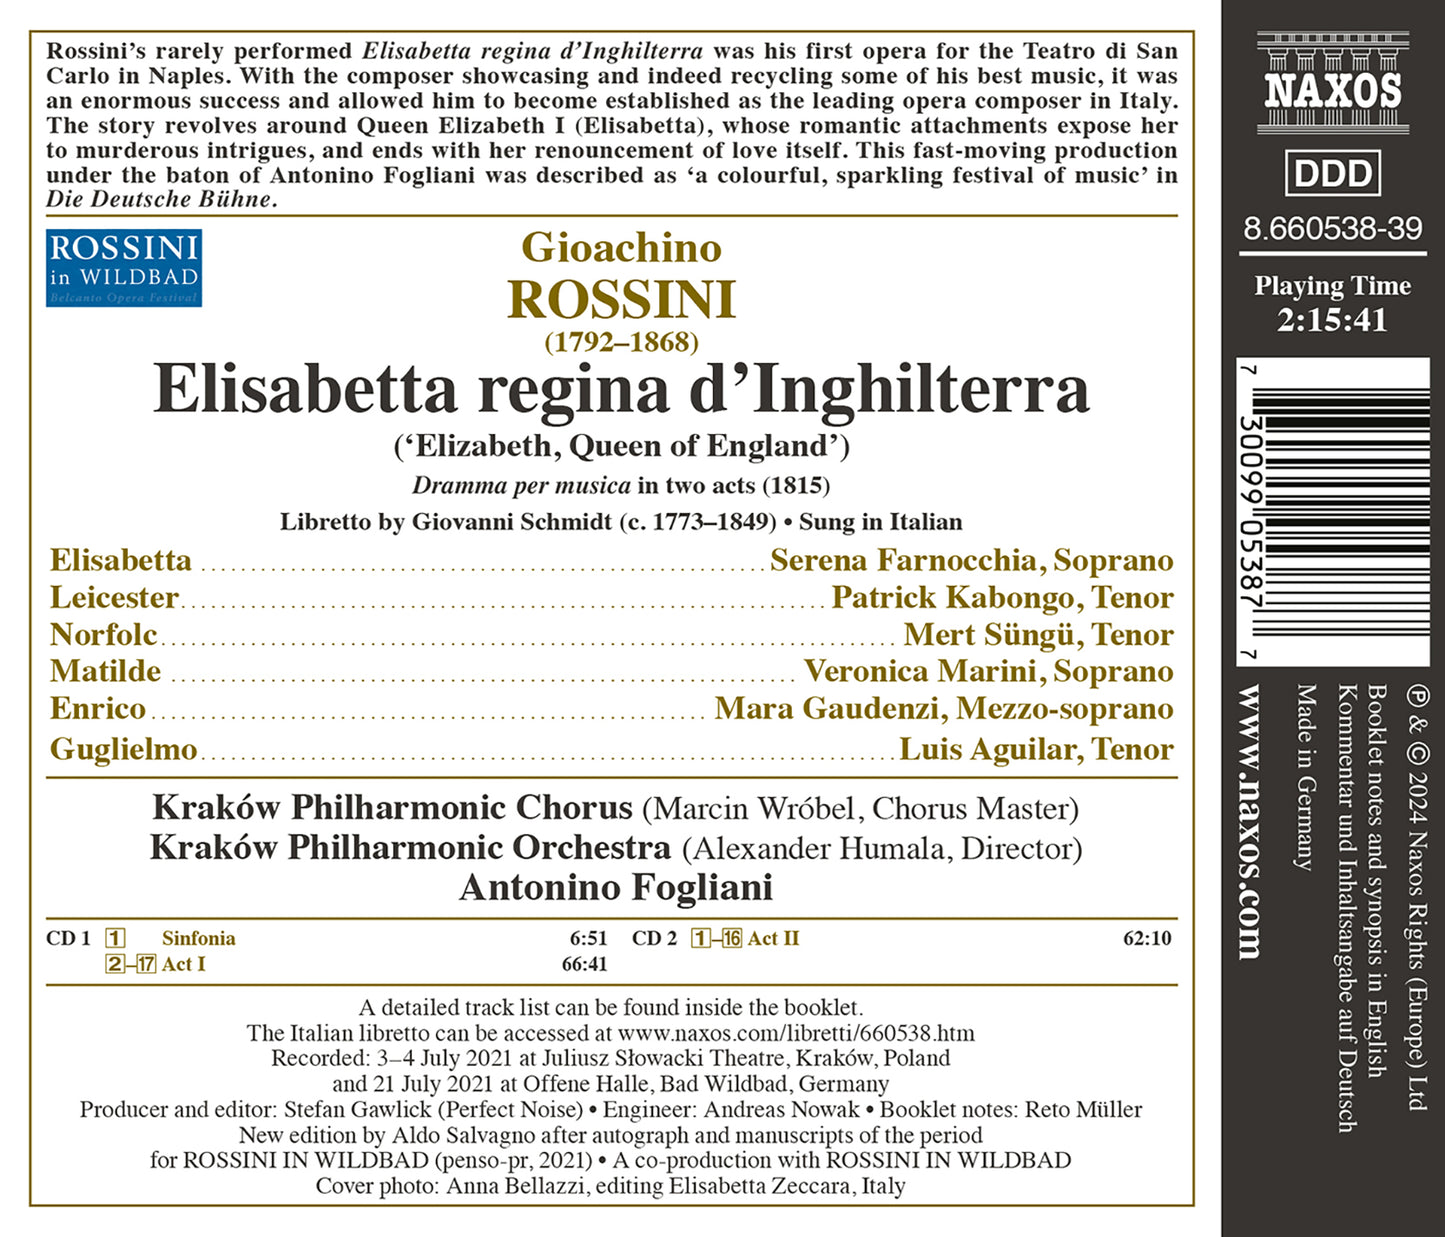 Rossini: Elisabetta, regina d'Inghilterra / Cracow Philharmonic Orchestra